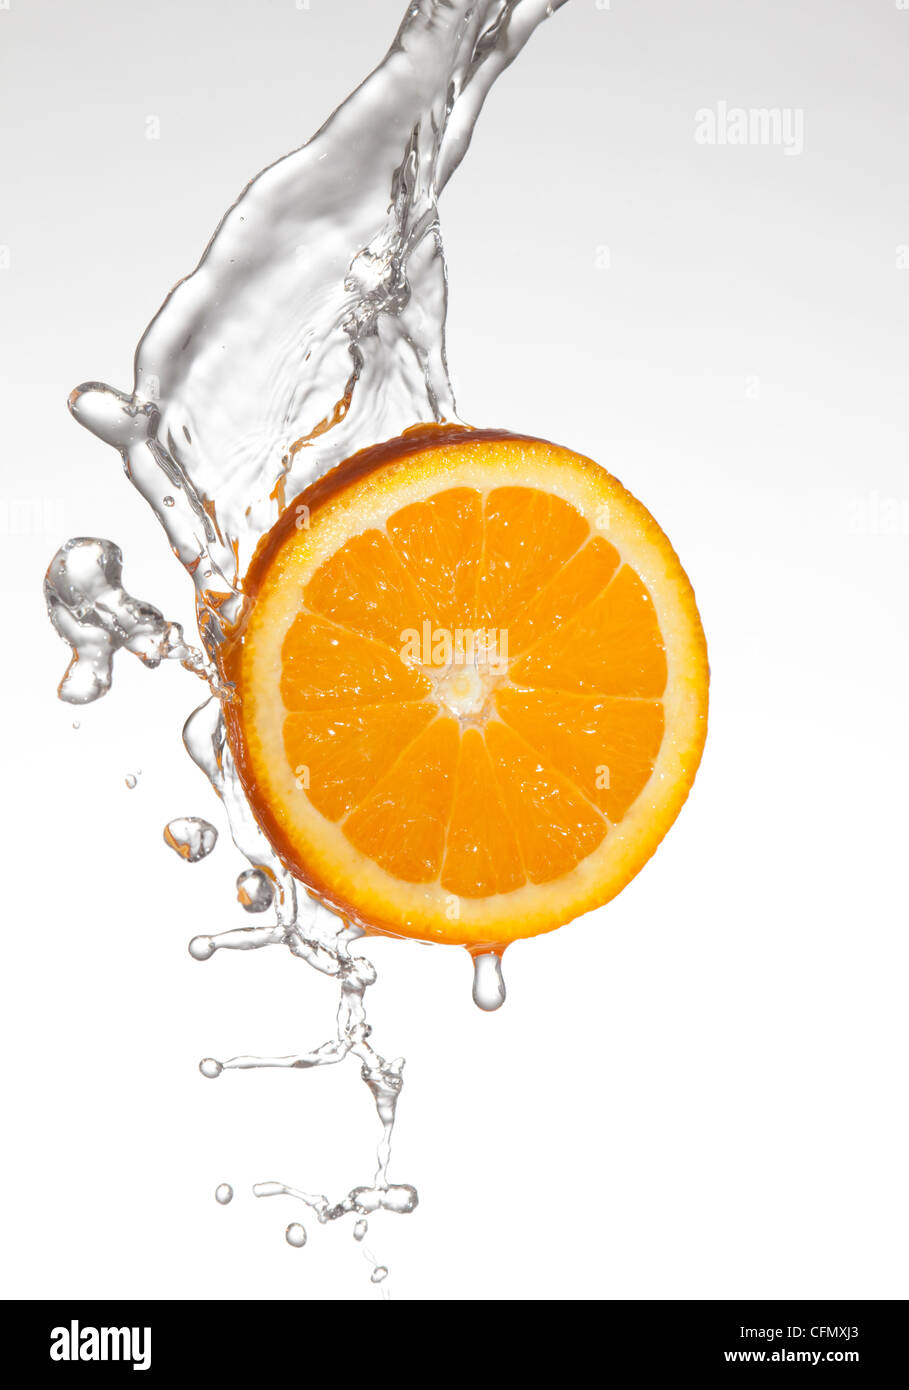 orange slice splashed with water Stock Photo